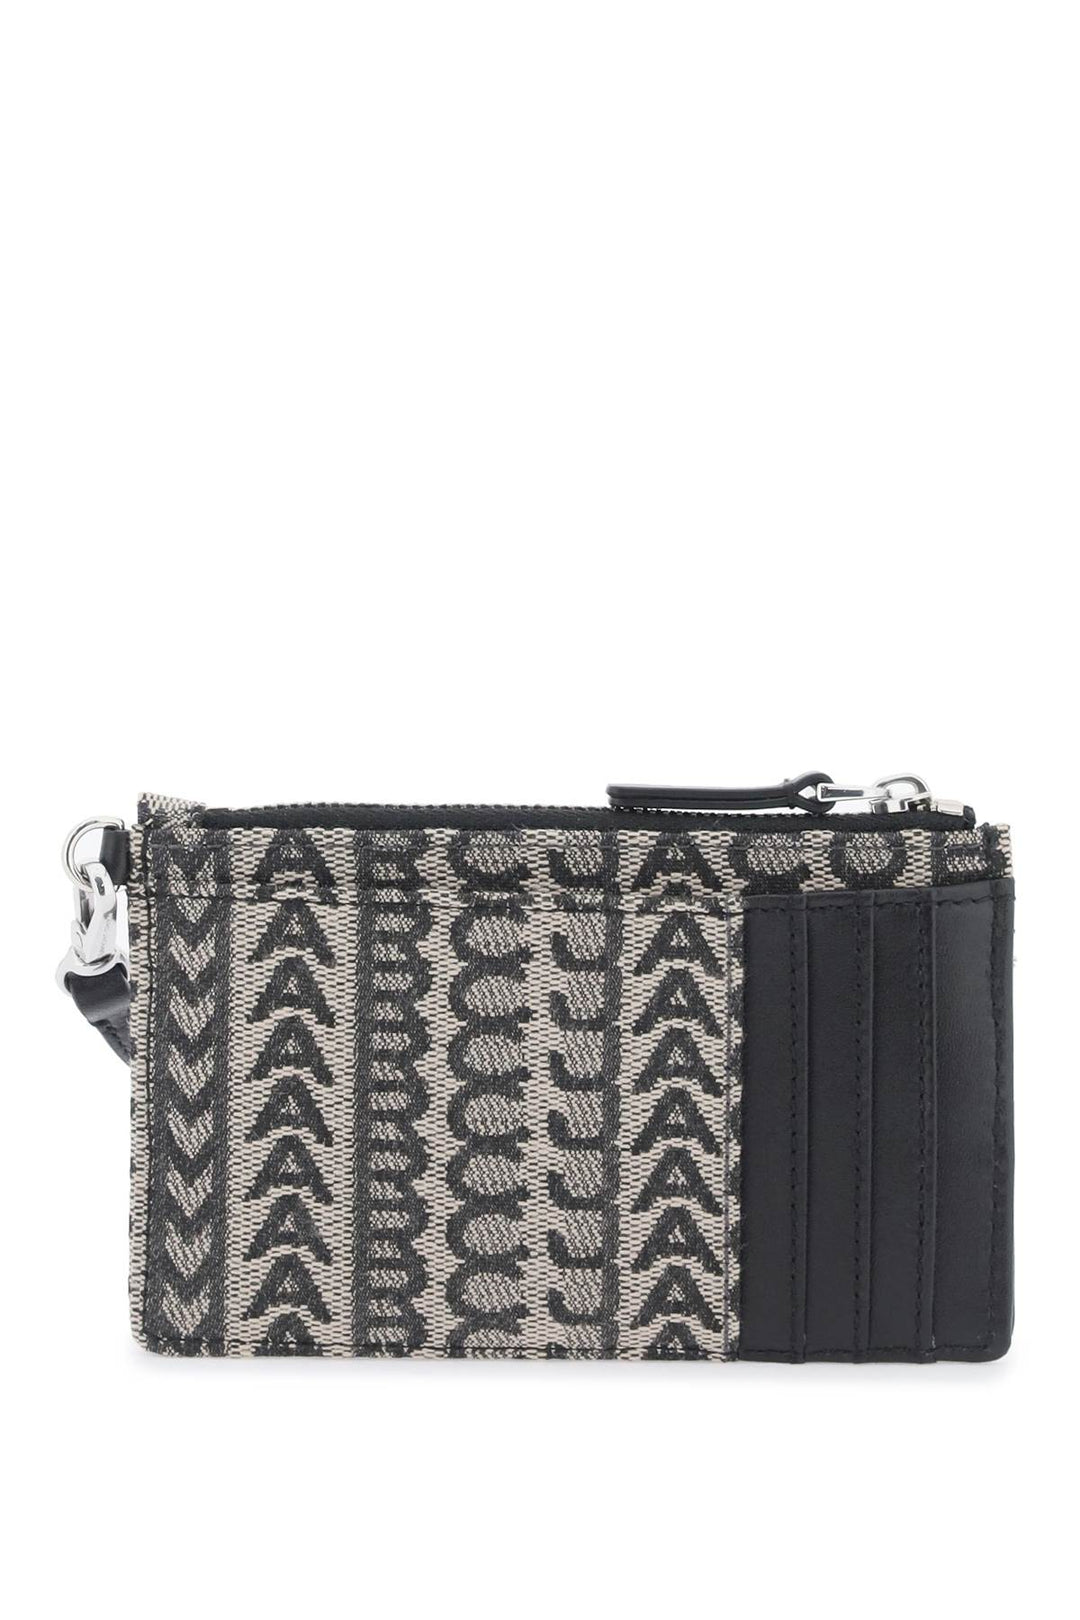 Marc Jacobs The Monogram Top Zip Wristlet Wallet   Beige